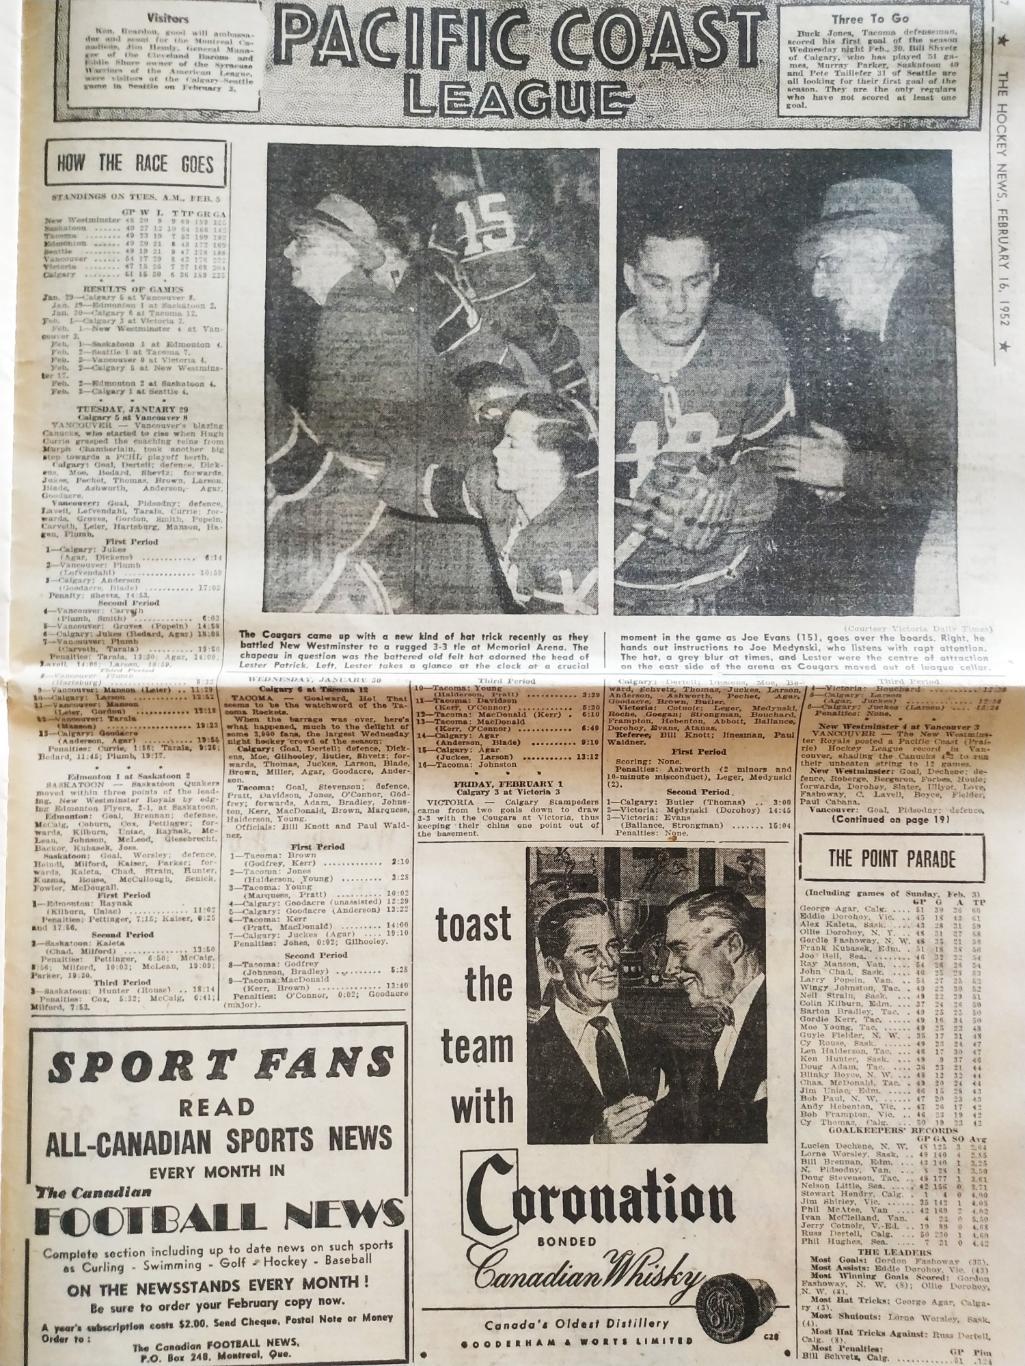 ХОККЕЙ ЖУРНАЛ ЕЖЕНЕДЕЛЬНИК НХЛ НОВОСТИ ХОККЕЯ FEB.16 1952 NHL THE HOCKEY NEWS 4